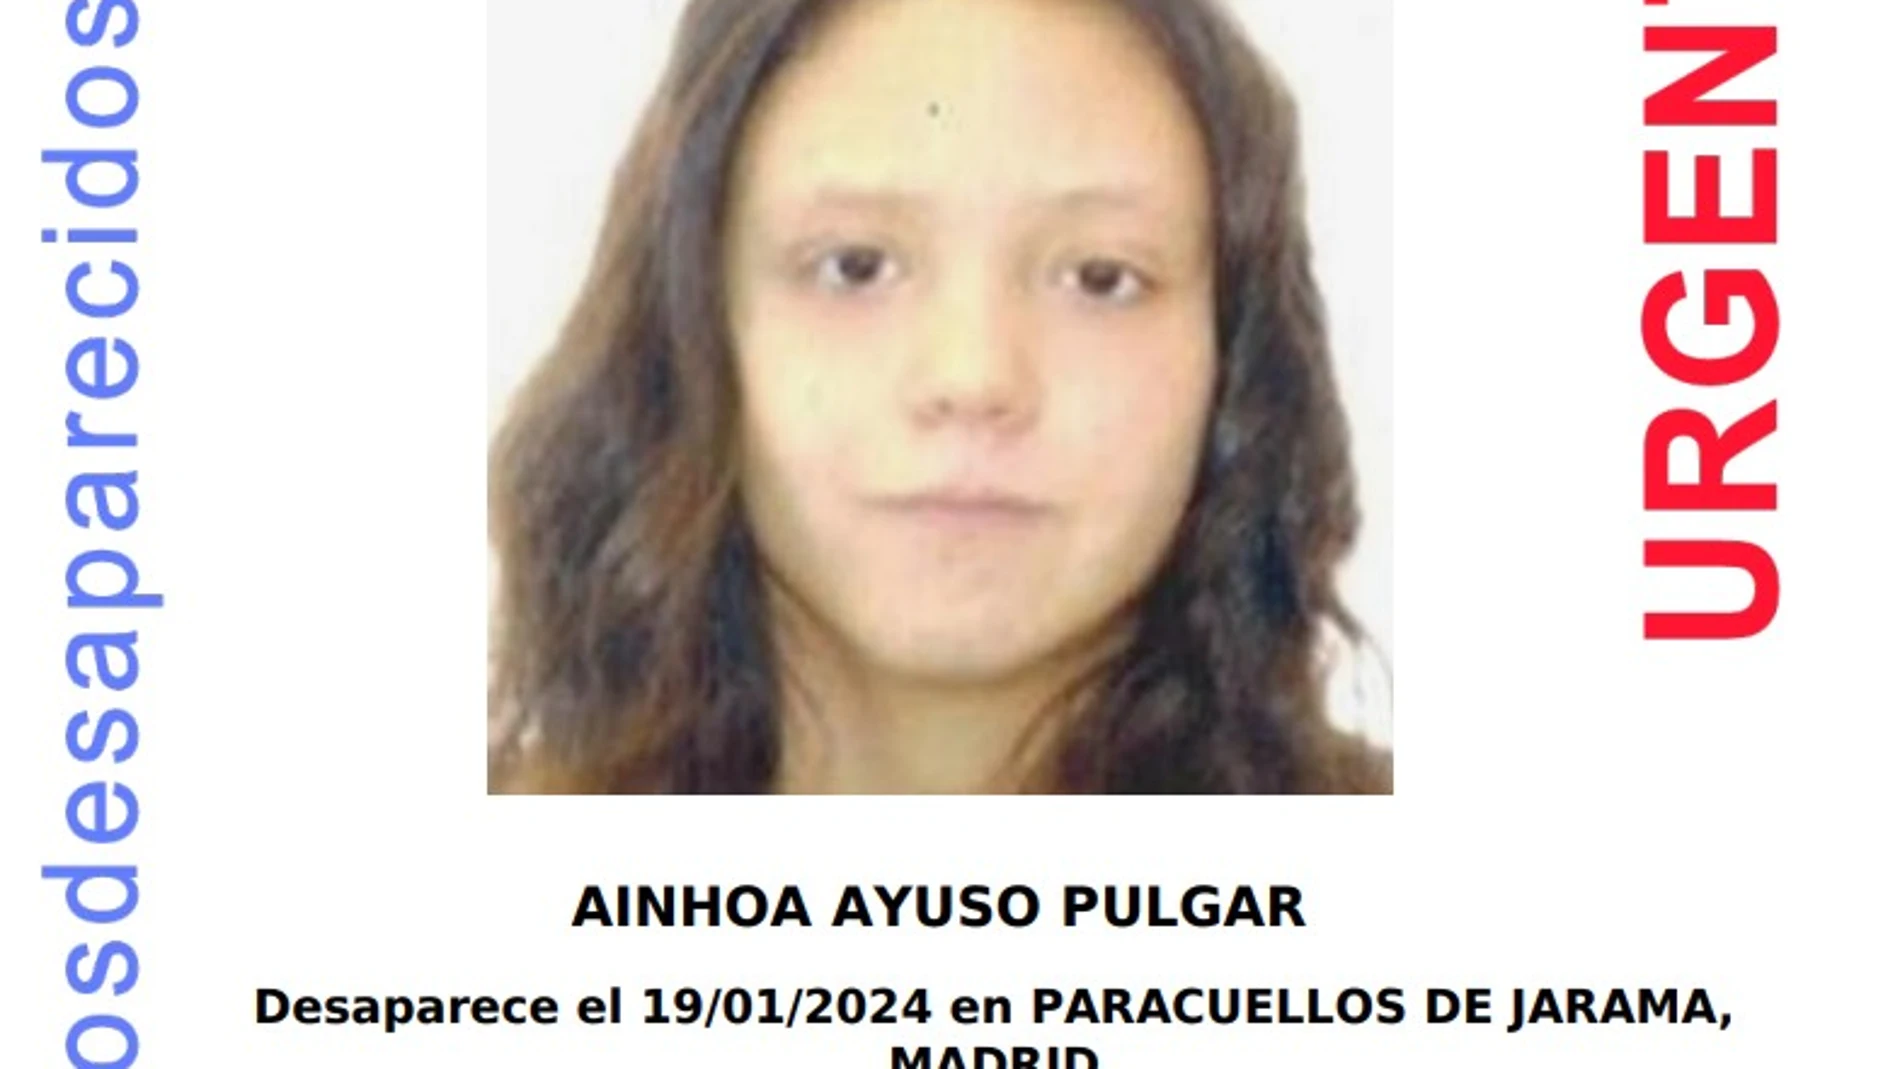 Ainhoa Ayuso Pulgar, la joven desaparecida en Paracuellos del Jarama